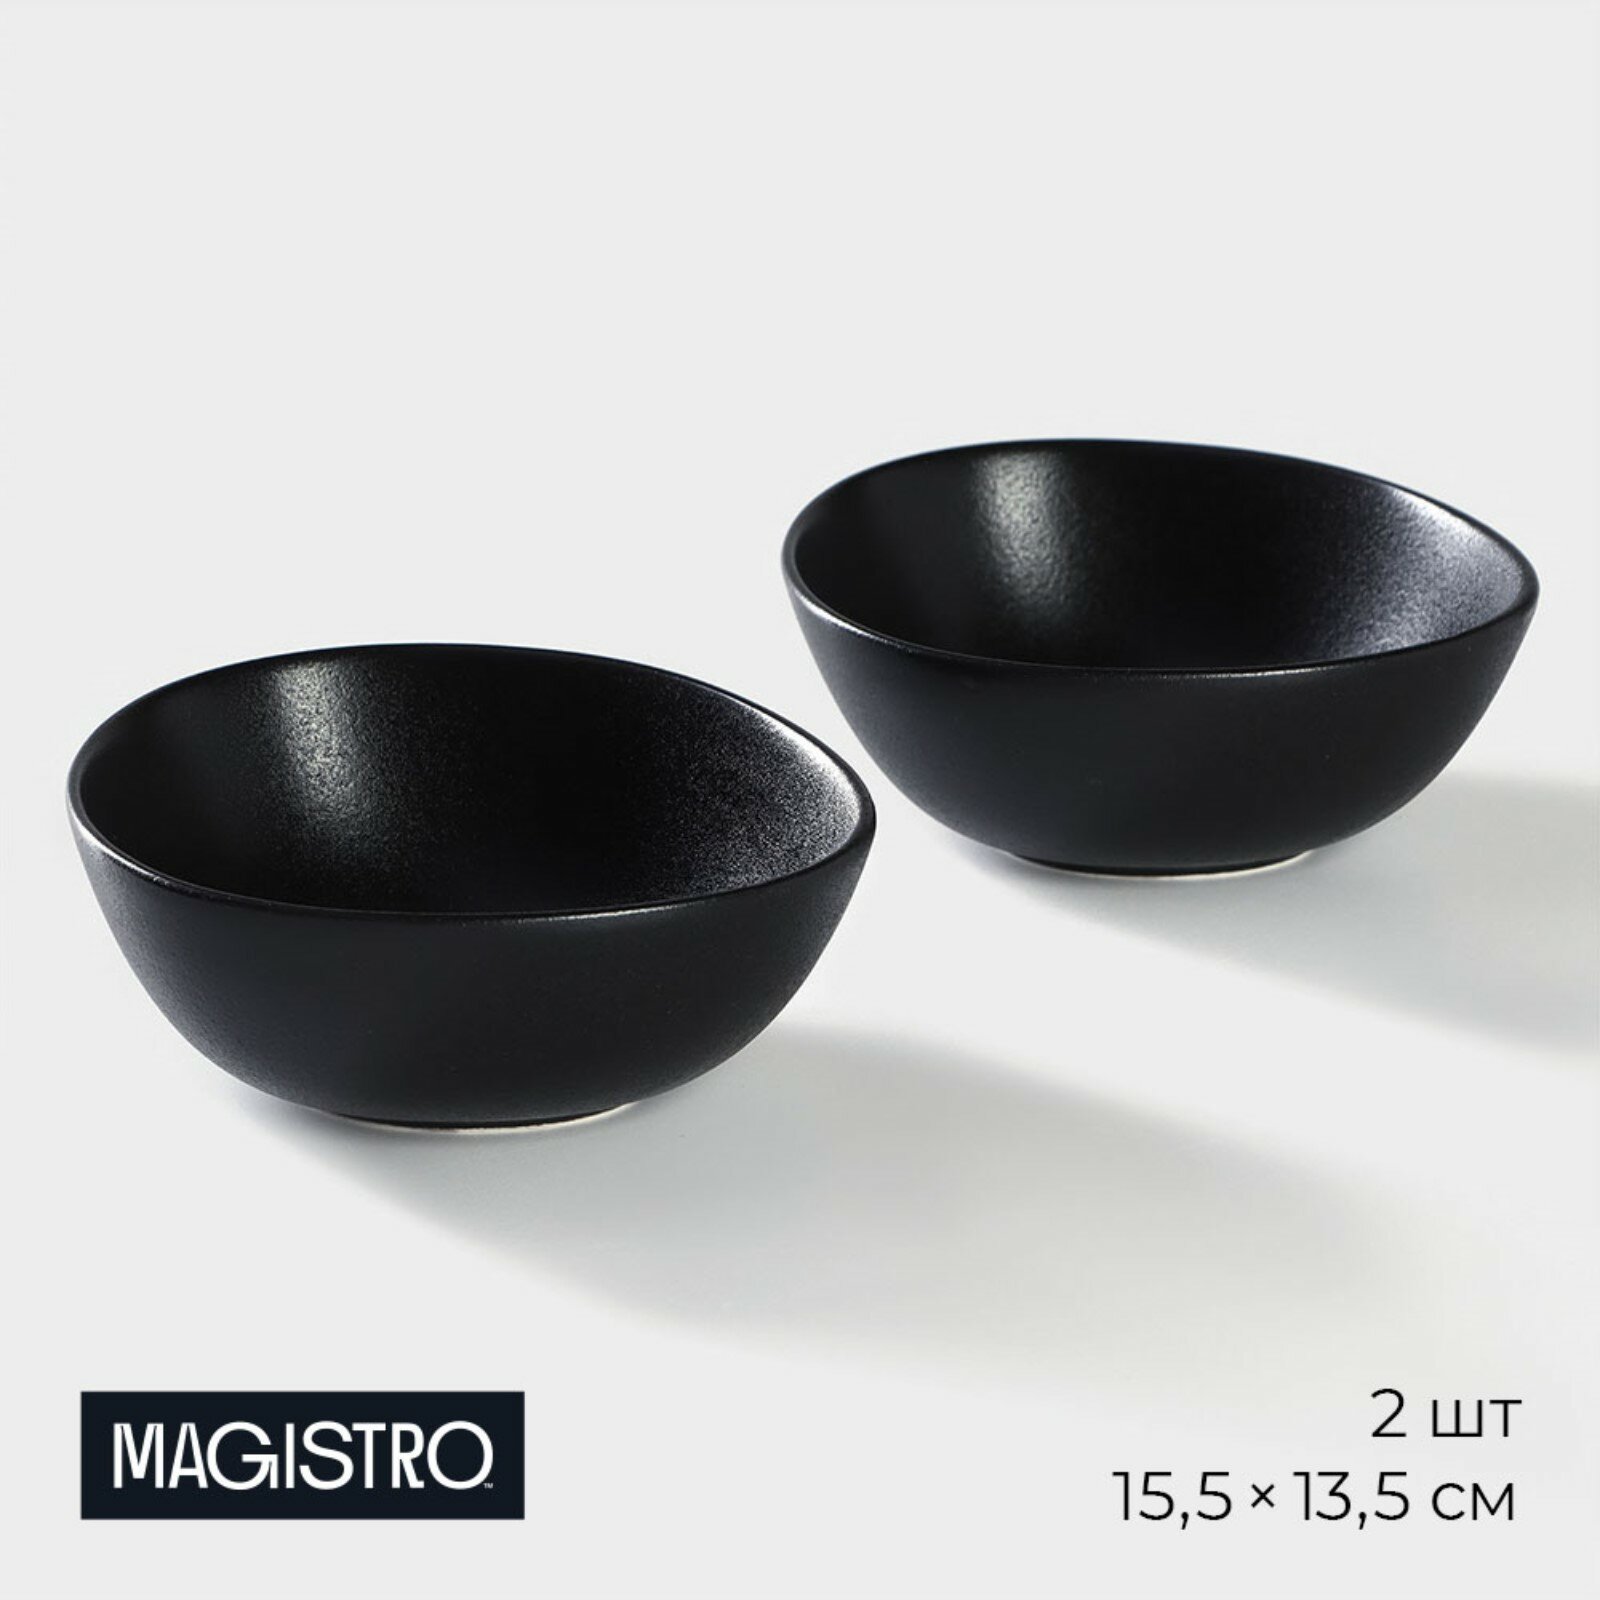 Салатник Magistro Carbon, набор 2 шт, для подачи, фарфор, 15,5×13,5 см, цвет чёрный